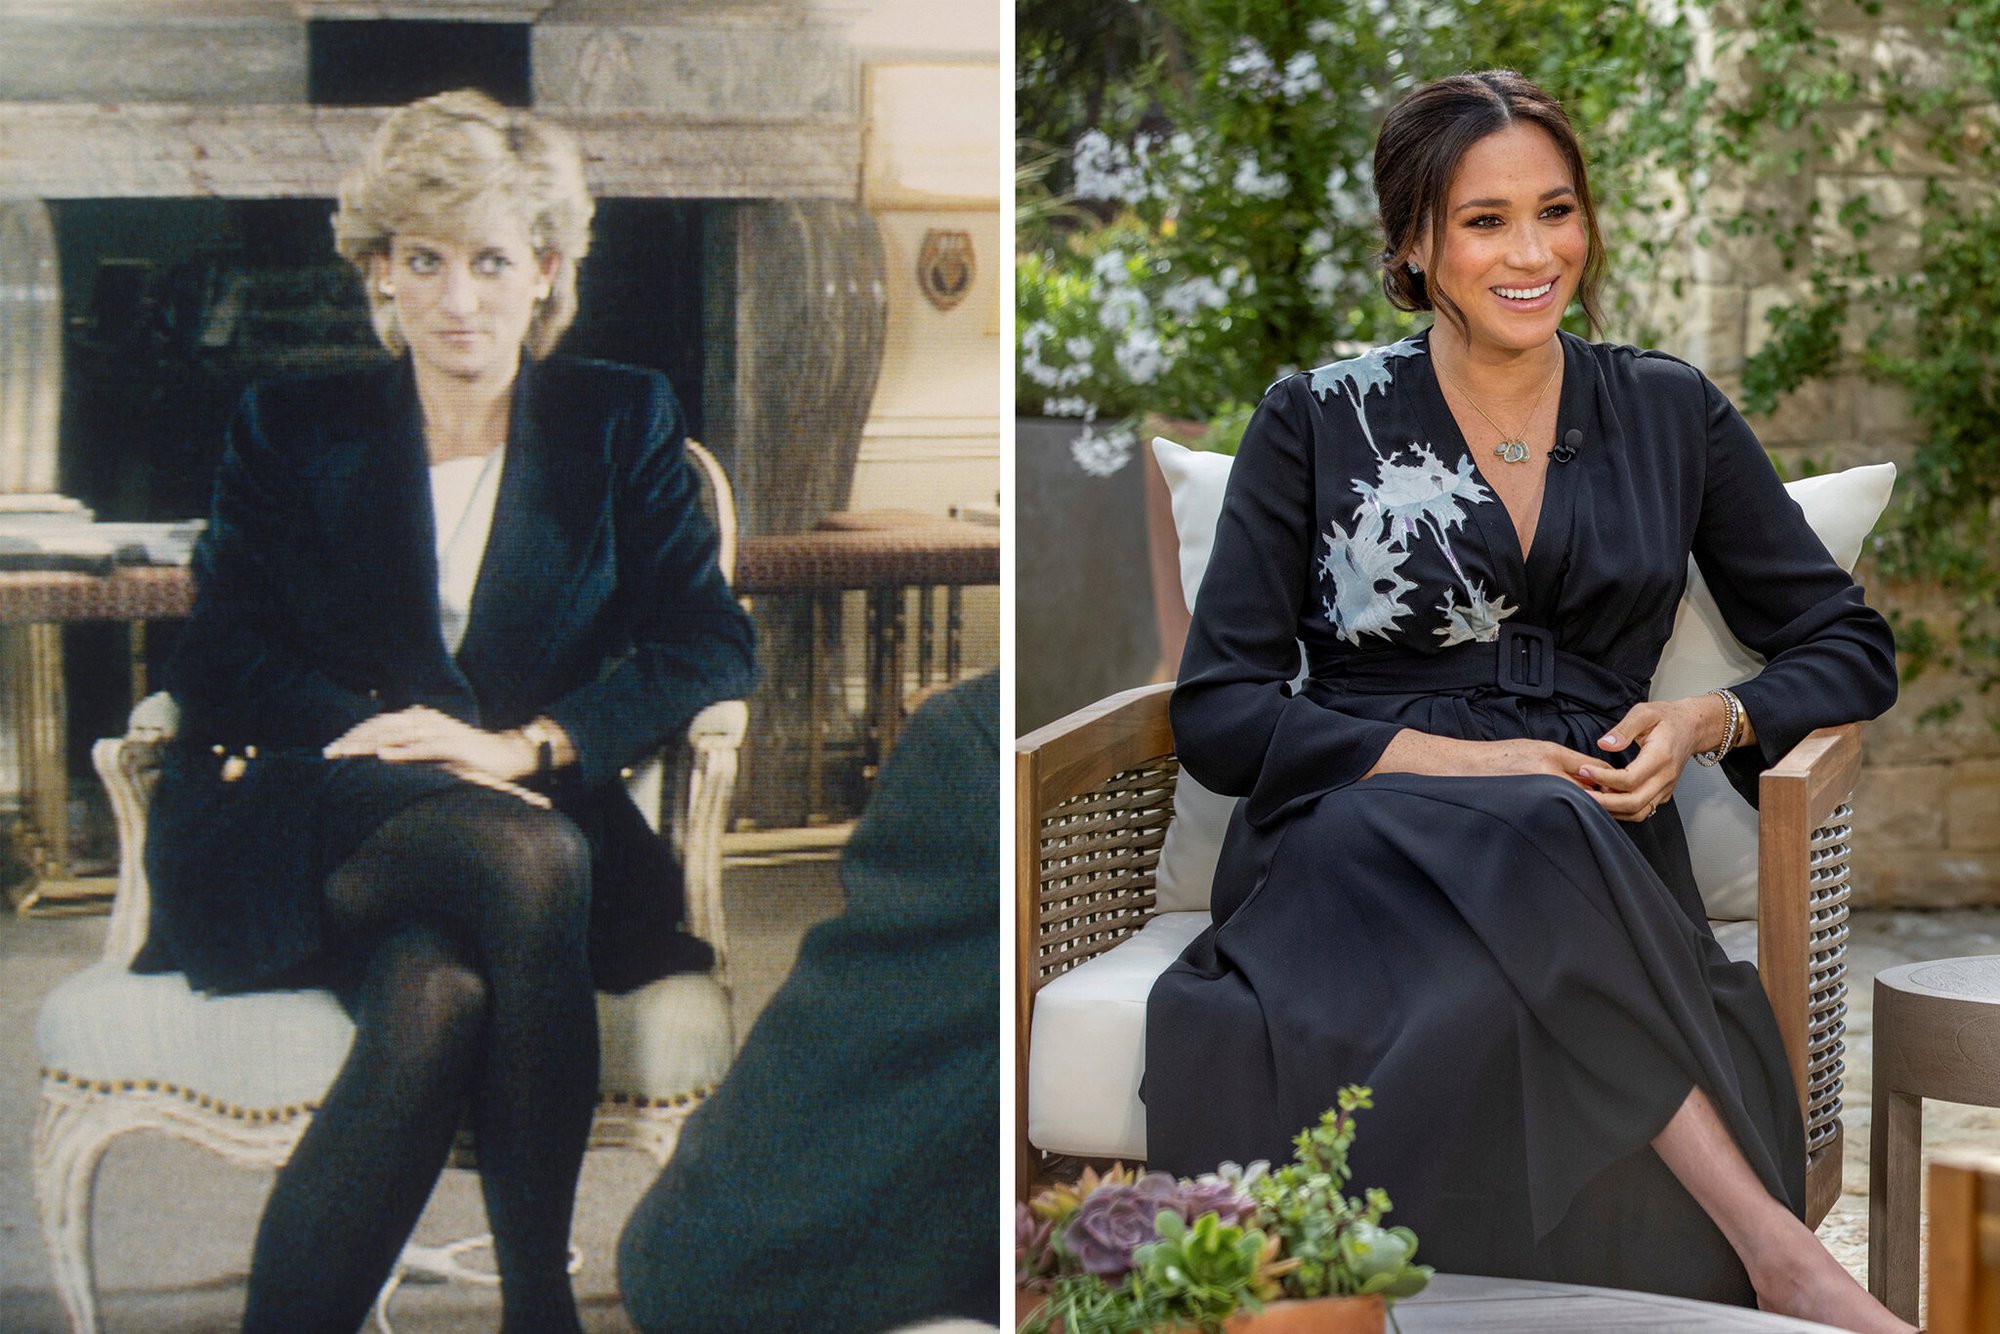 Điểm tương đồng khó tin giữa Meghan và Công nương Diana: Từ quan điểm về đám cưới hoàng gia đến những cuộc phỏng vấn khiến dư luận dậy sóng - Ảnh 6.